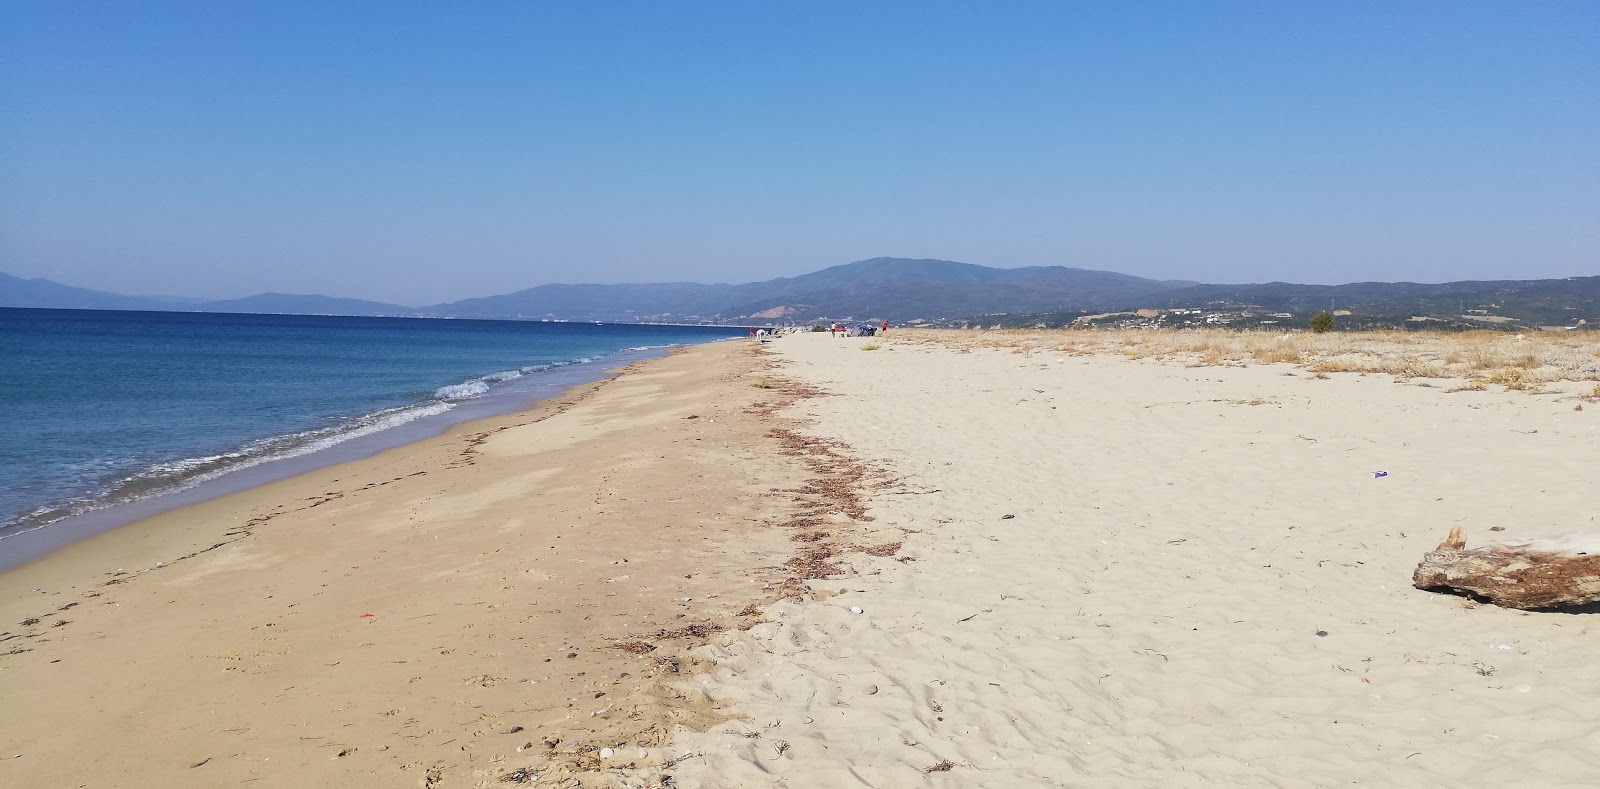 Amphipolis Beach II'in fotoğrafı geniş plaj ile birlikte